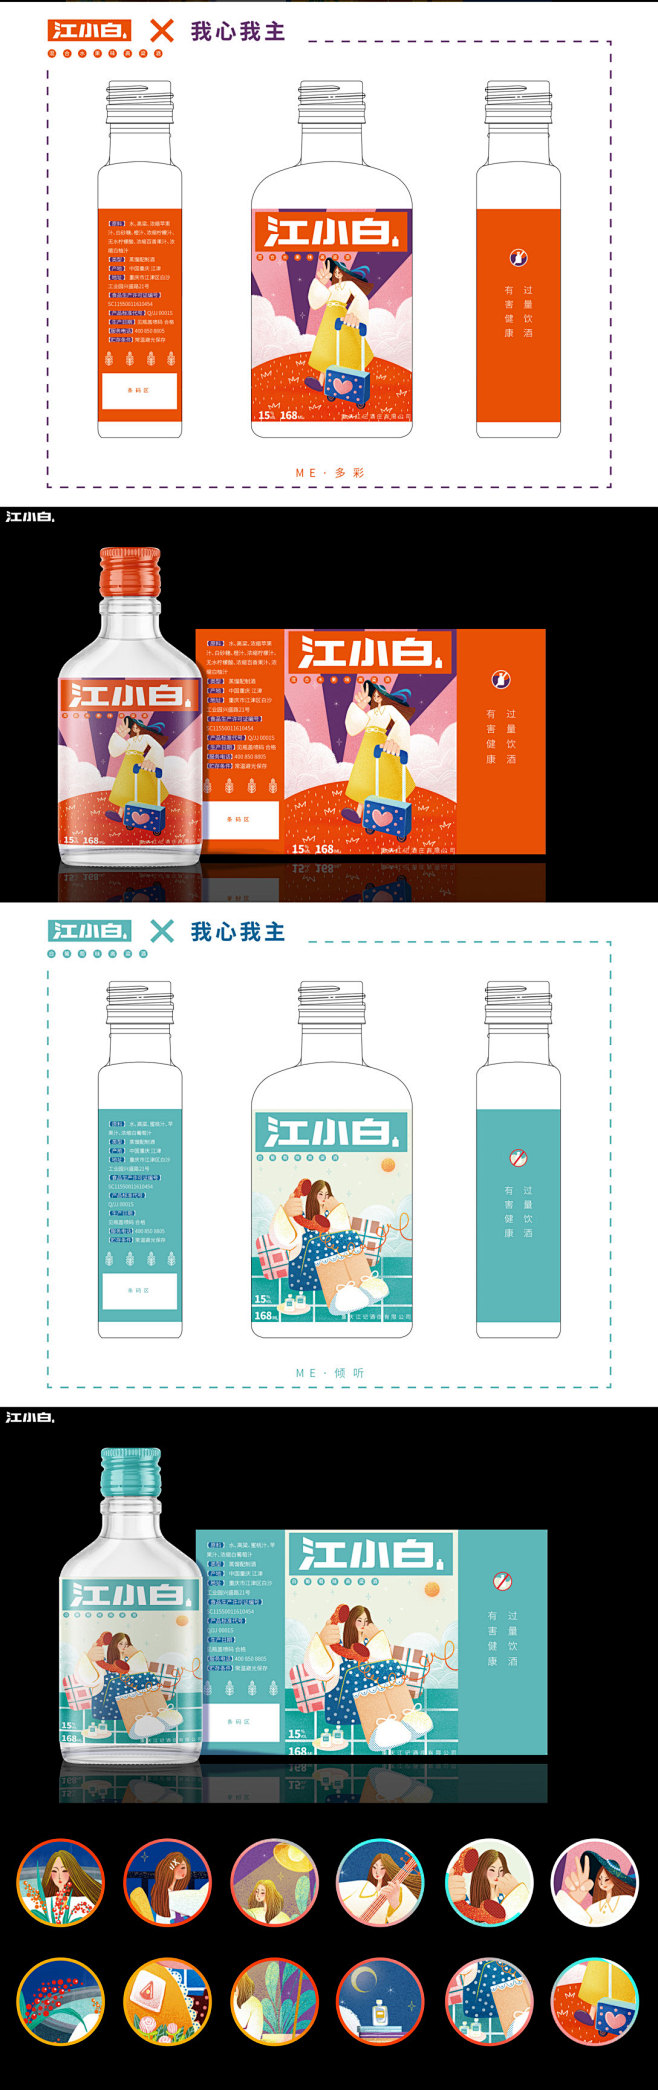 江小白高粱酒--系列插画包装设计-古田路...